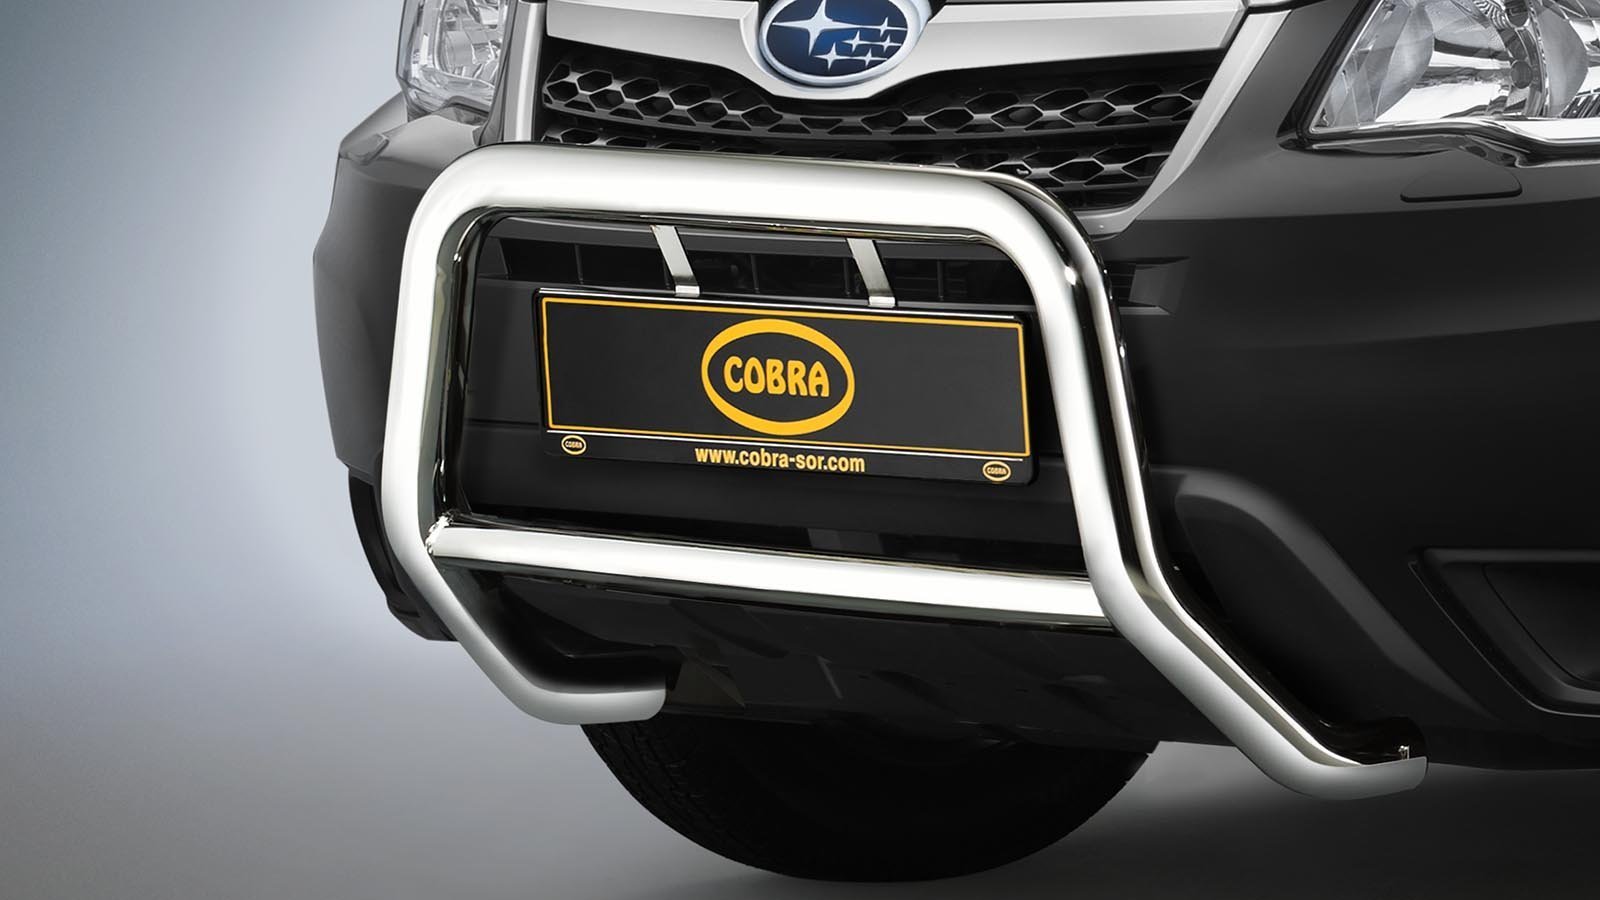 Subaru Forester EU-Valorauta 2013-2019 (Cobra)